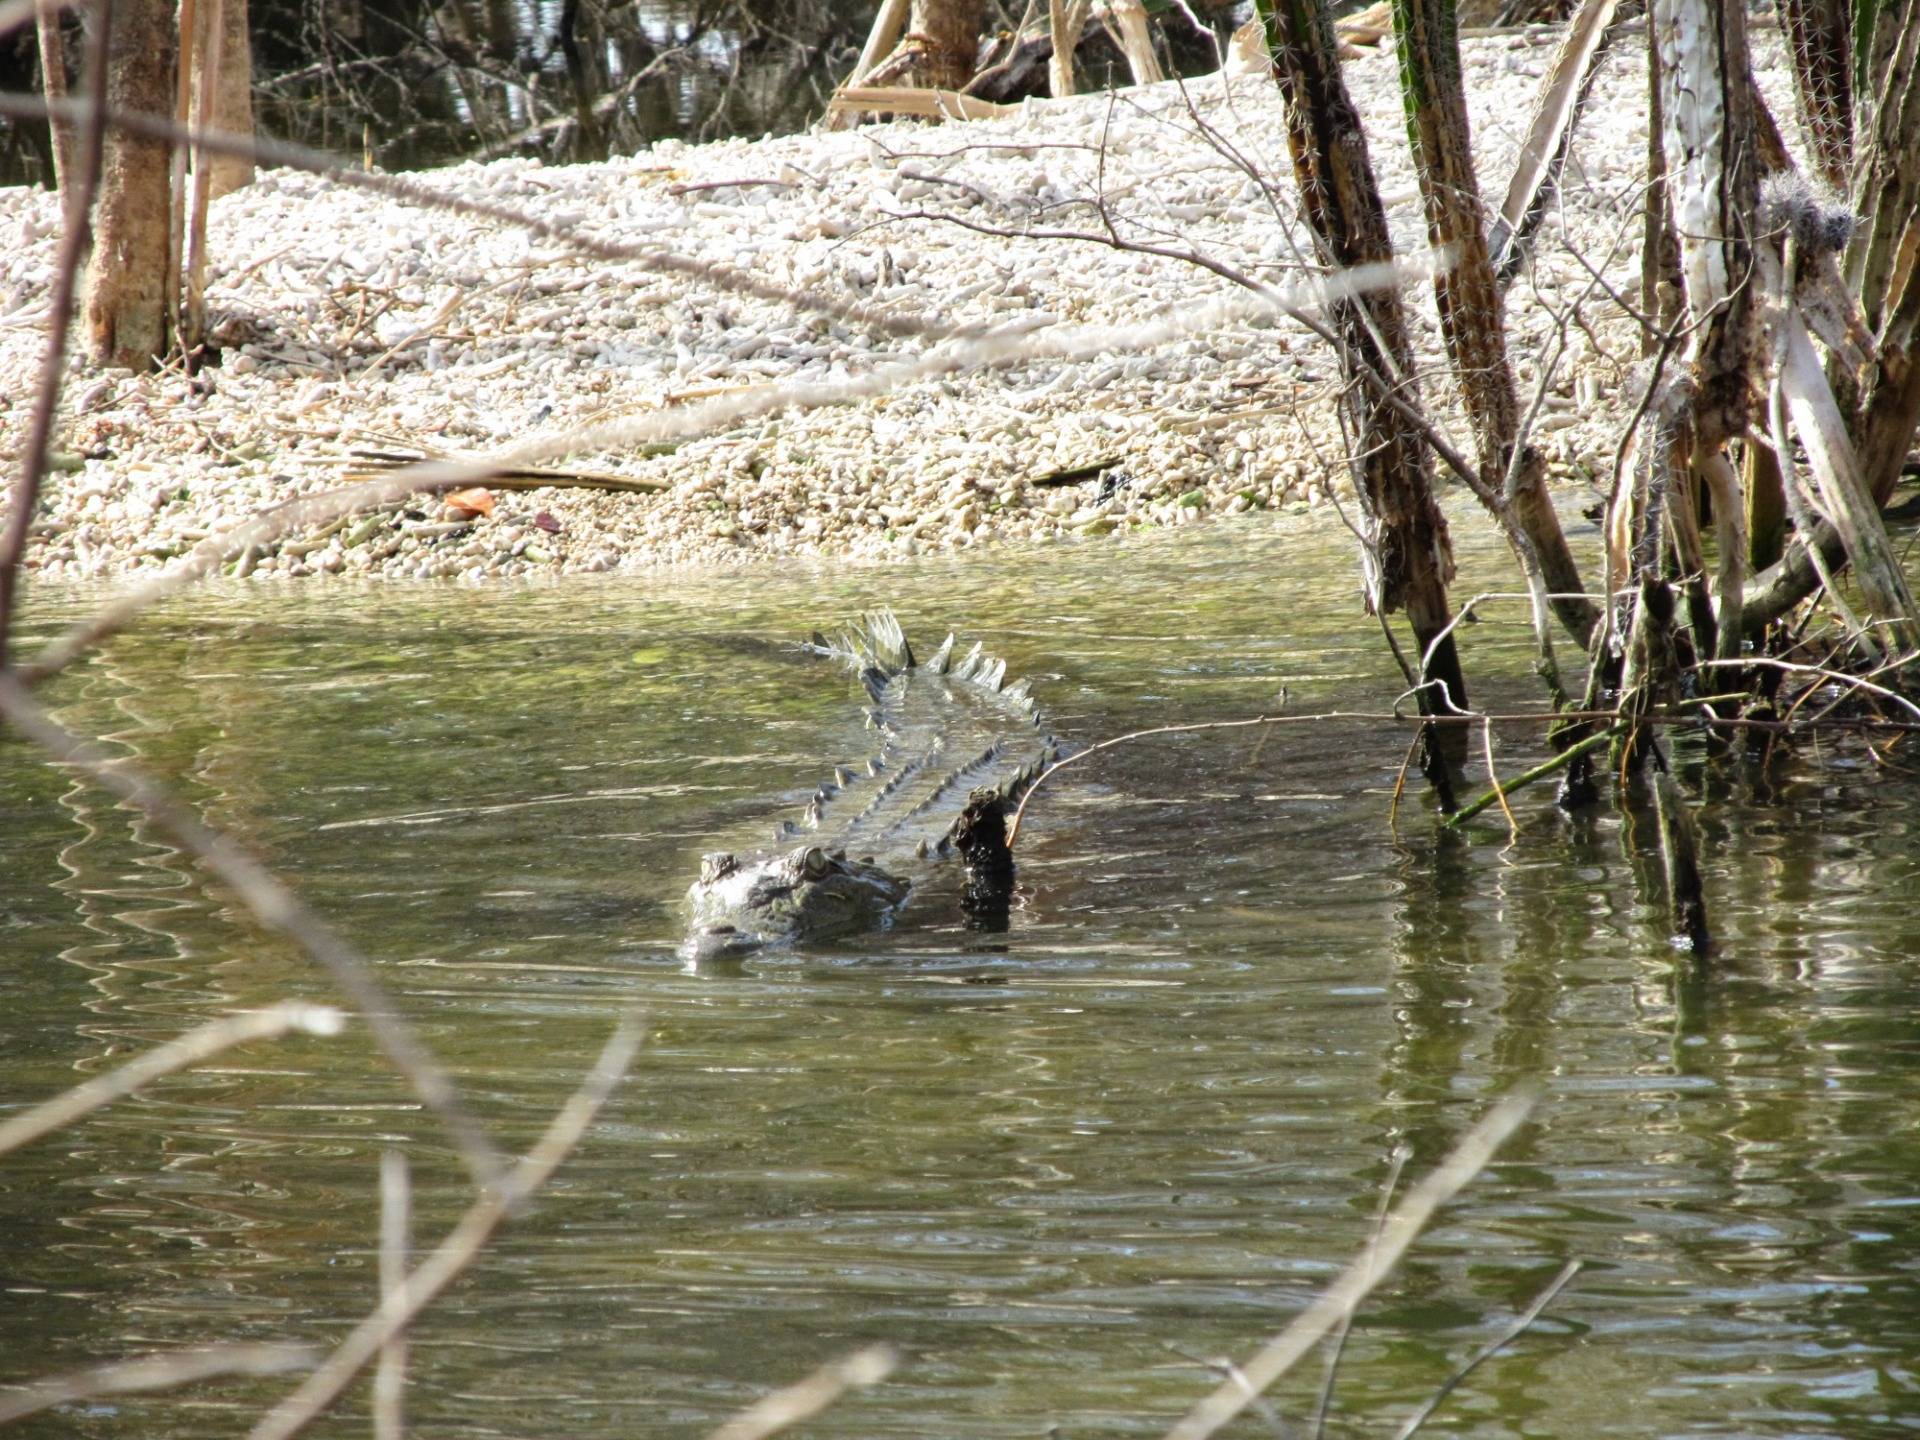 Krokodyl wygrzewający się na brzegu daje nura do wody, gdy tylko próbujemy się do niego zbliżyć